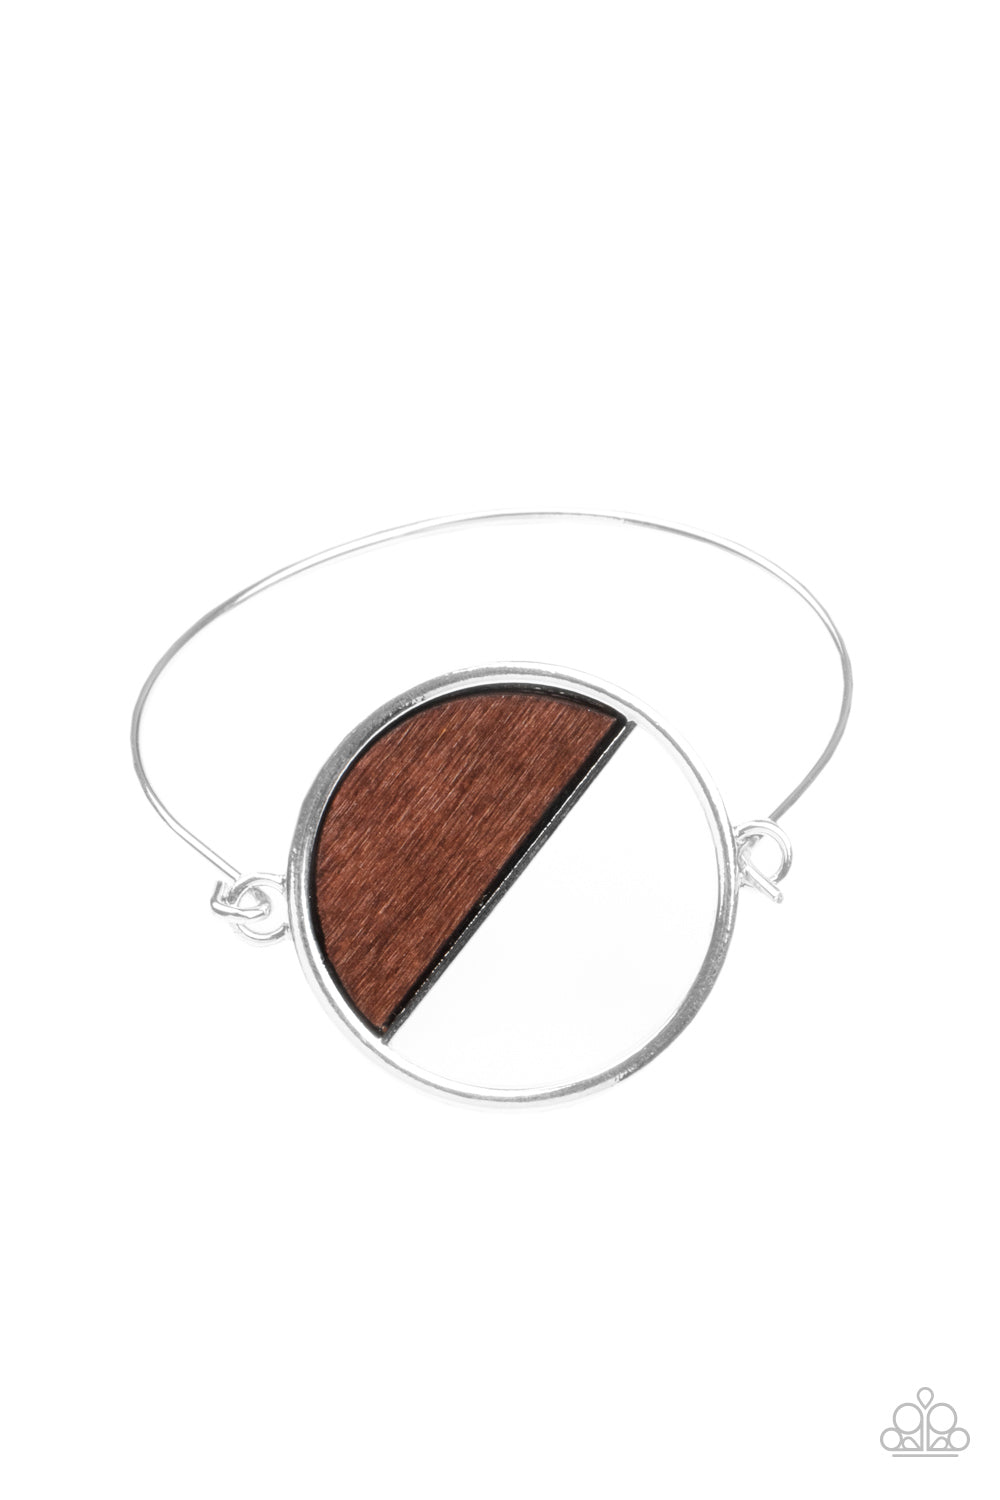 Timber Trade - Brown Bracelet